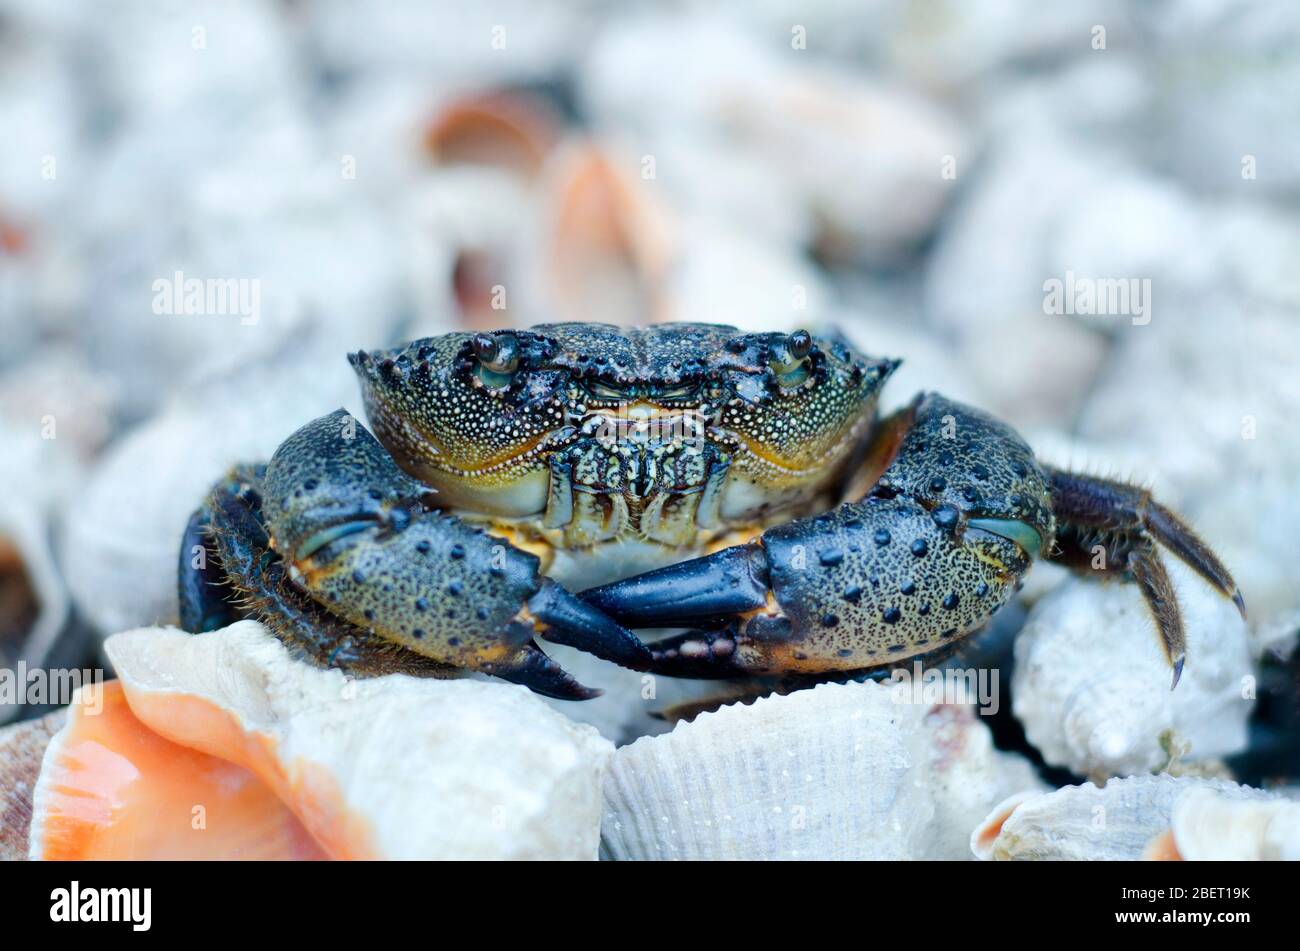 Schwarze Seekrabbe mit großen Krallen sitzt auf einem Haufen Muscheln und blickt mit kleinen Augen auf den Betrachter. Nahaufnahme, geringe Schärfentiefe. Stockfoto